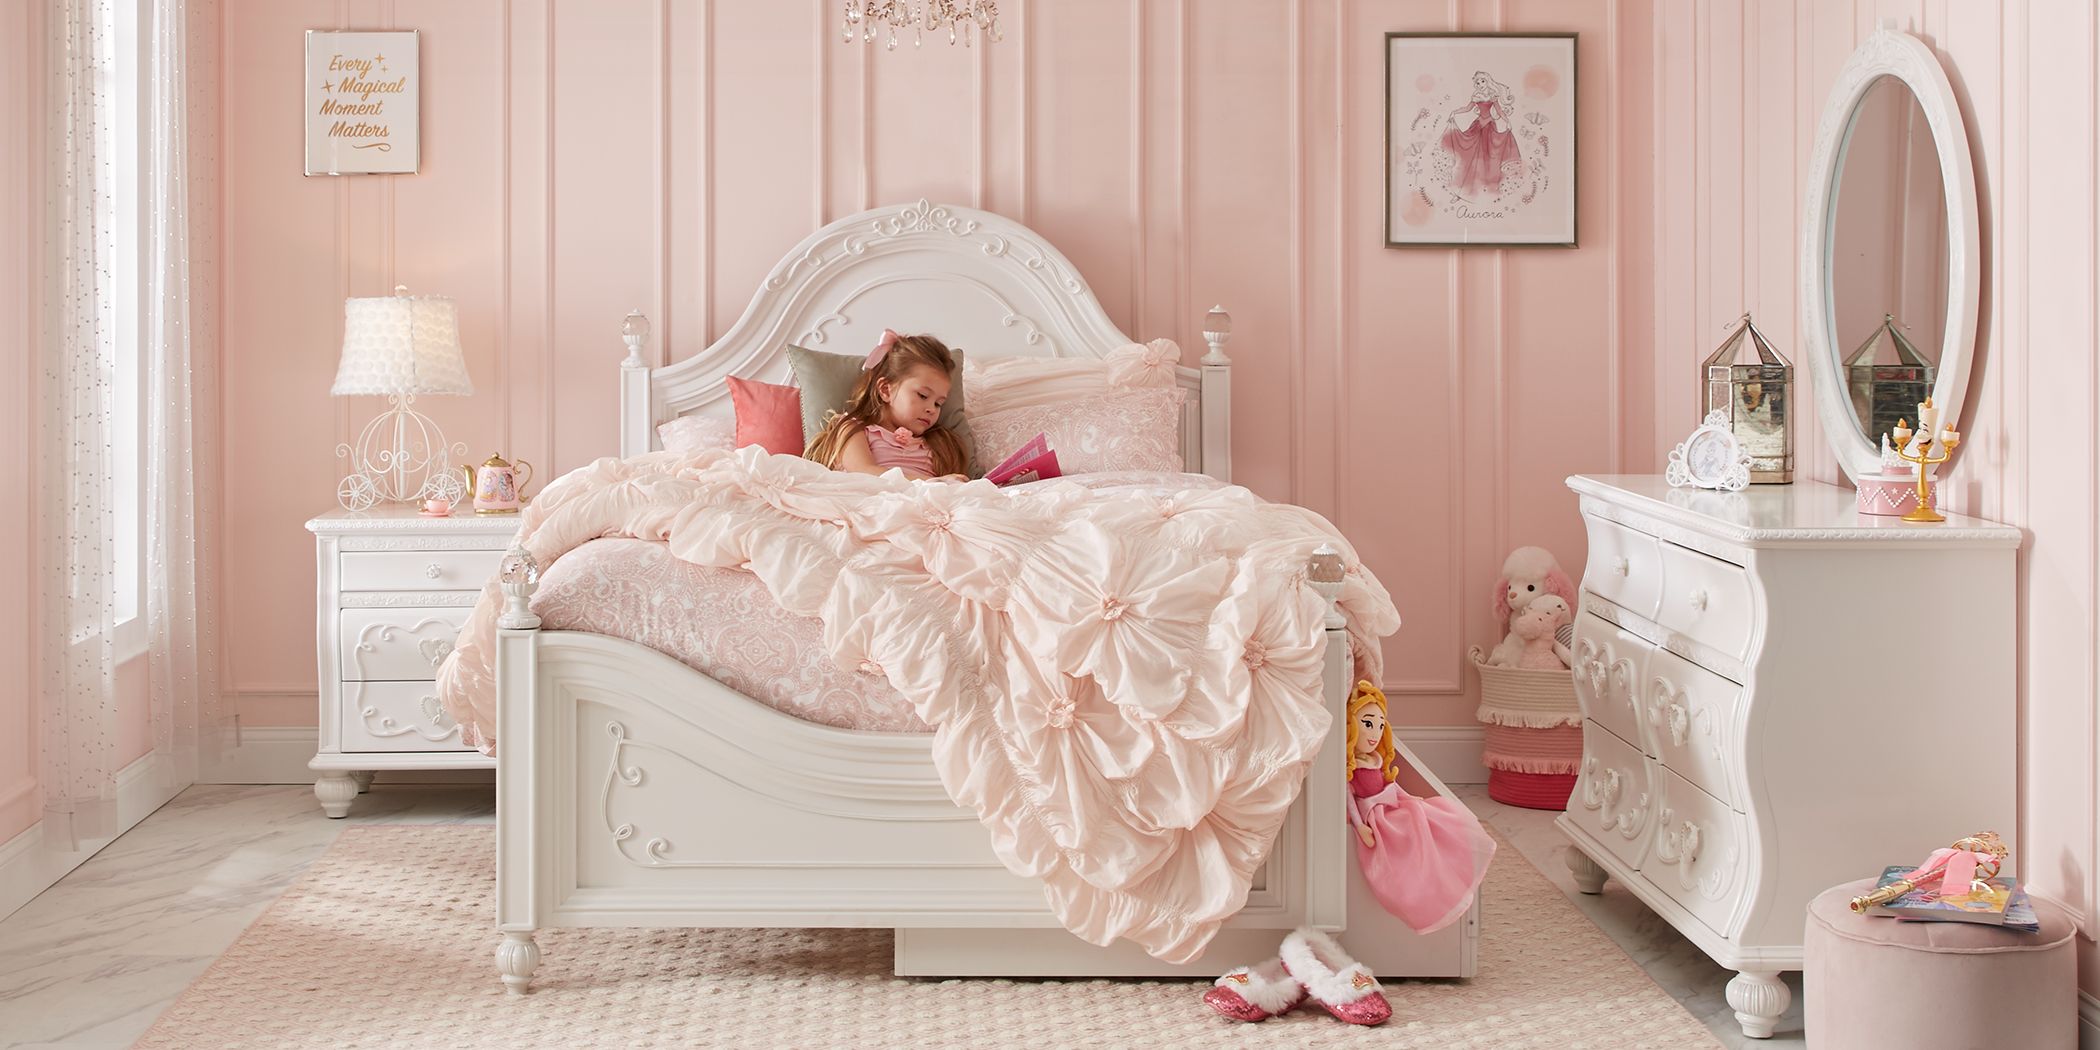 Disney Princess Bedroom Furniture, Step 2 Princess Castle Toddler Twin Bedroom Set